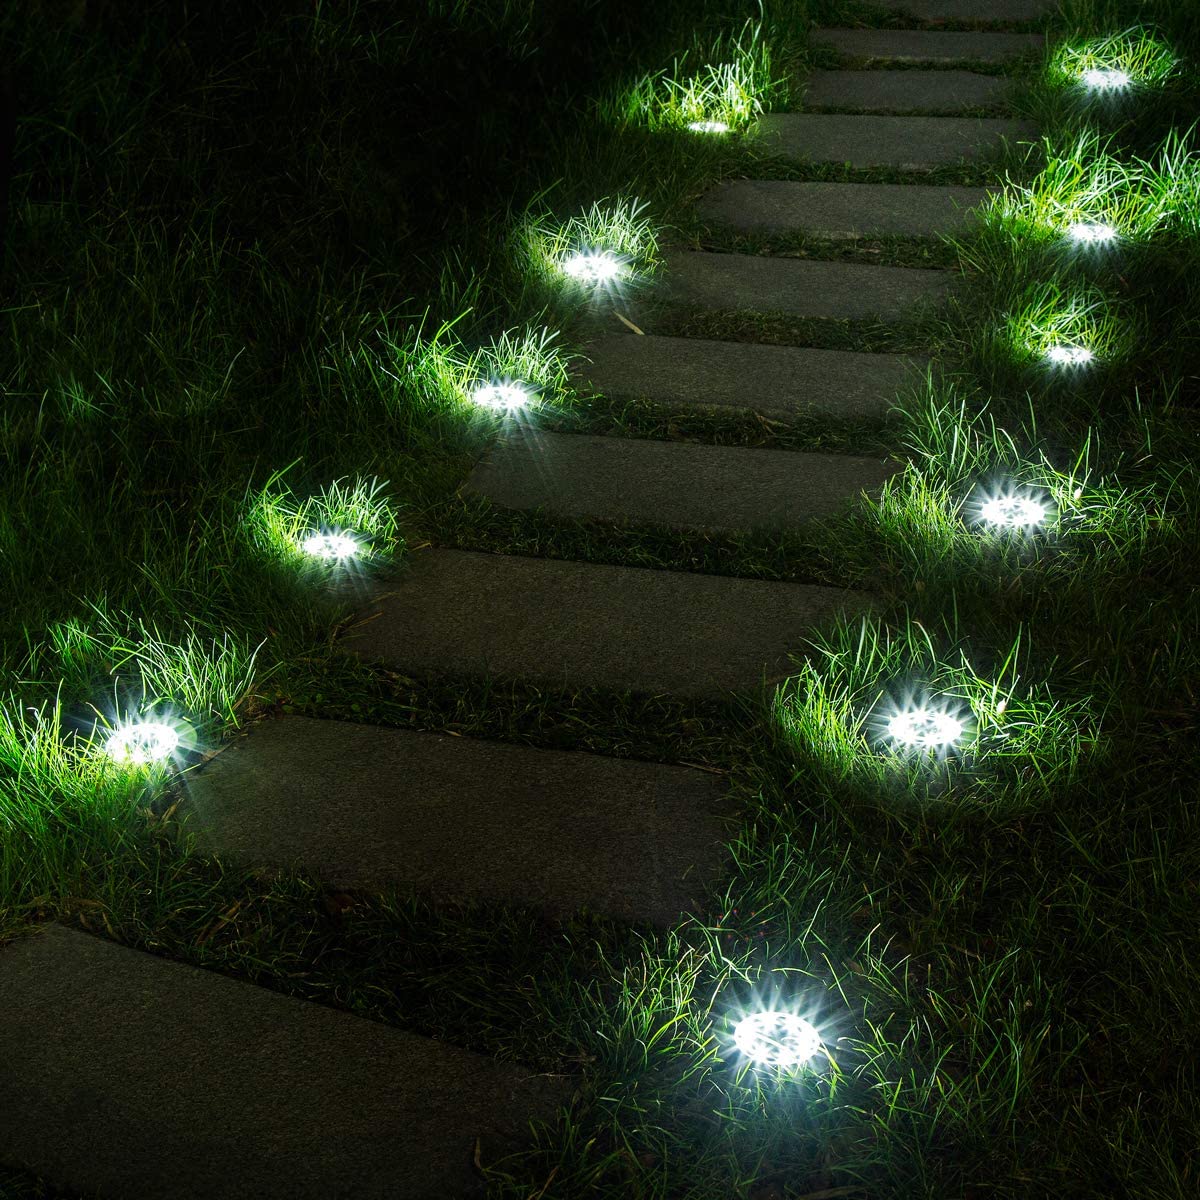 Lighted pathway